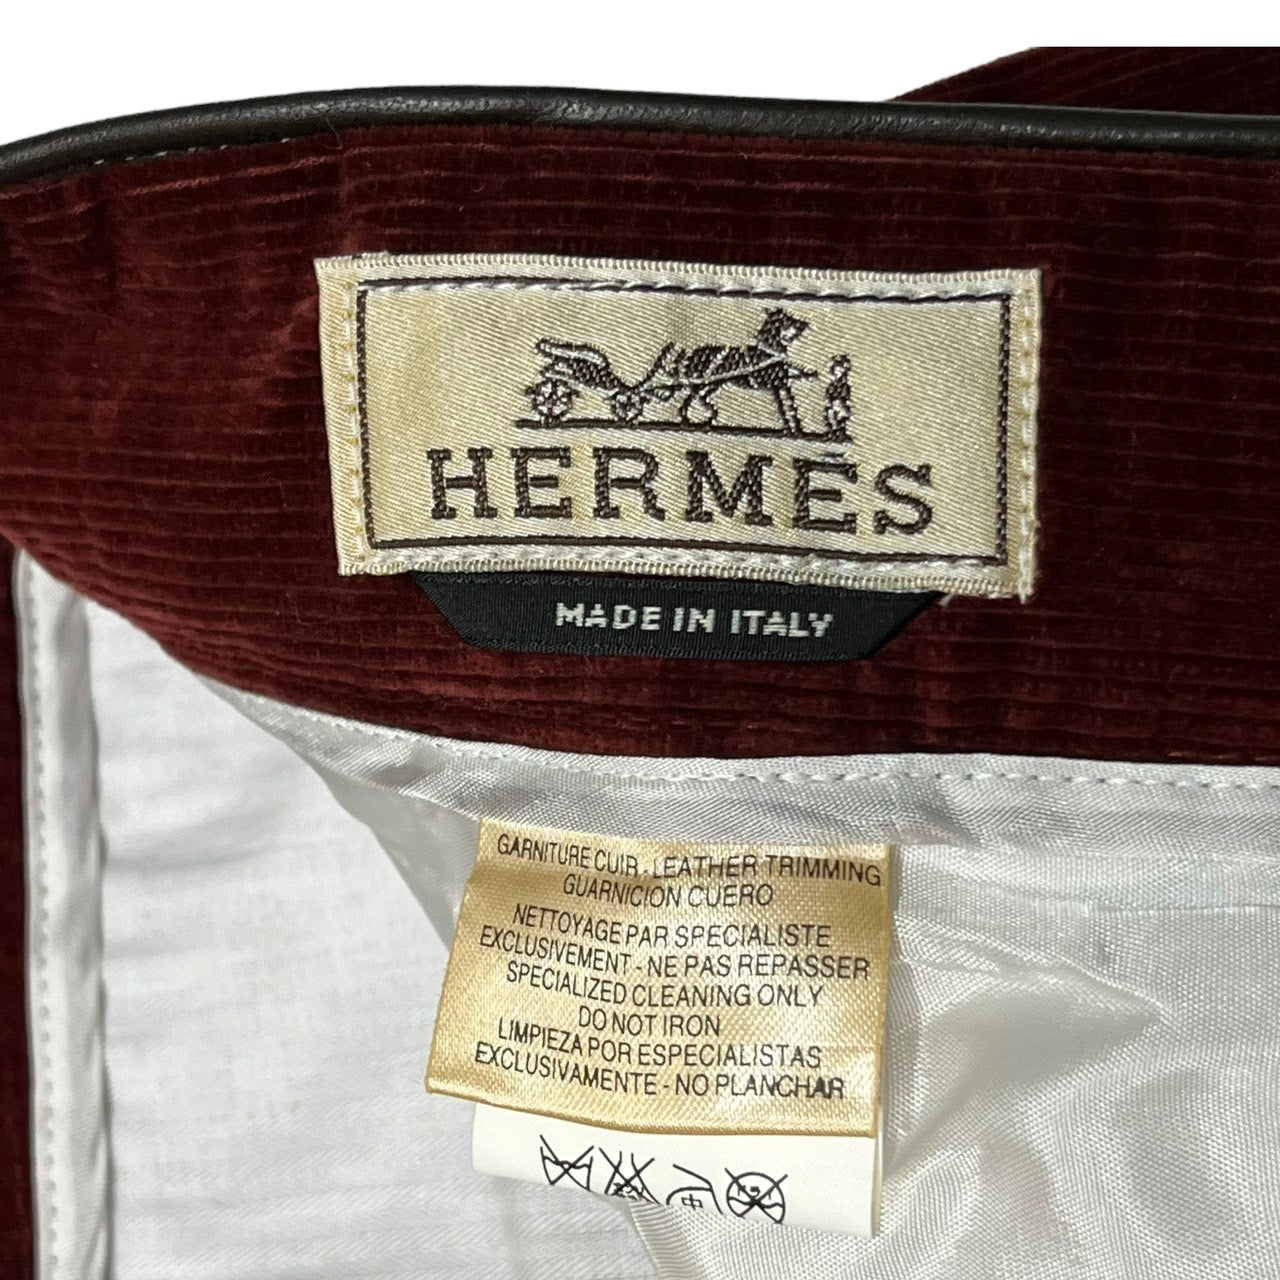 HERMES(エルメス) Leather lamb piping corduroy  trousers/ラムレザーパイピングコーデュロイパンツ/トラウザー/スラックス 52(XLサイズ程度) ボルドー（レッド/ブラウン）  エルメスジャポンタグ